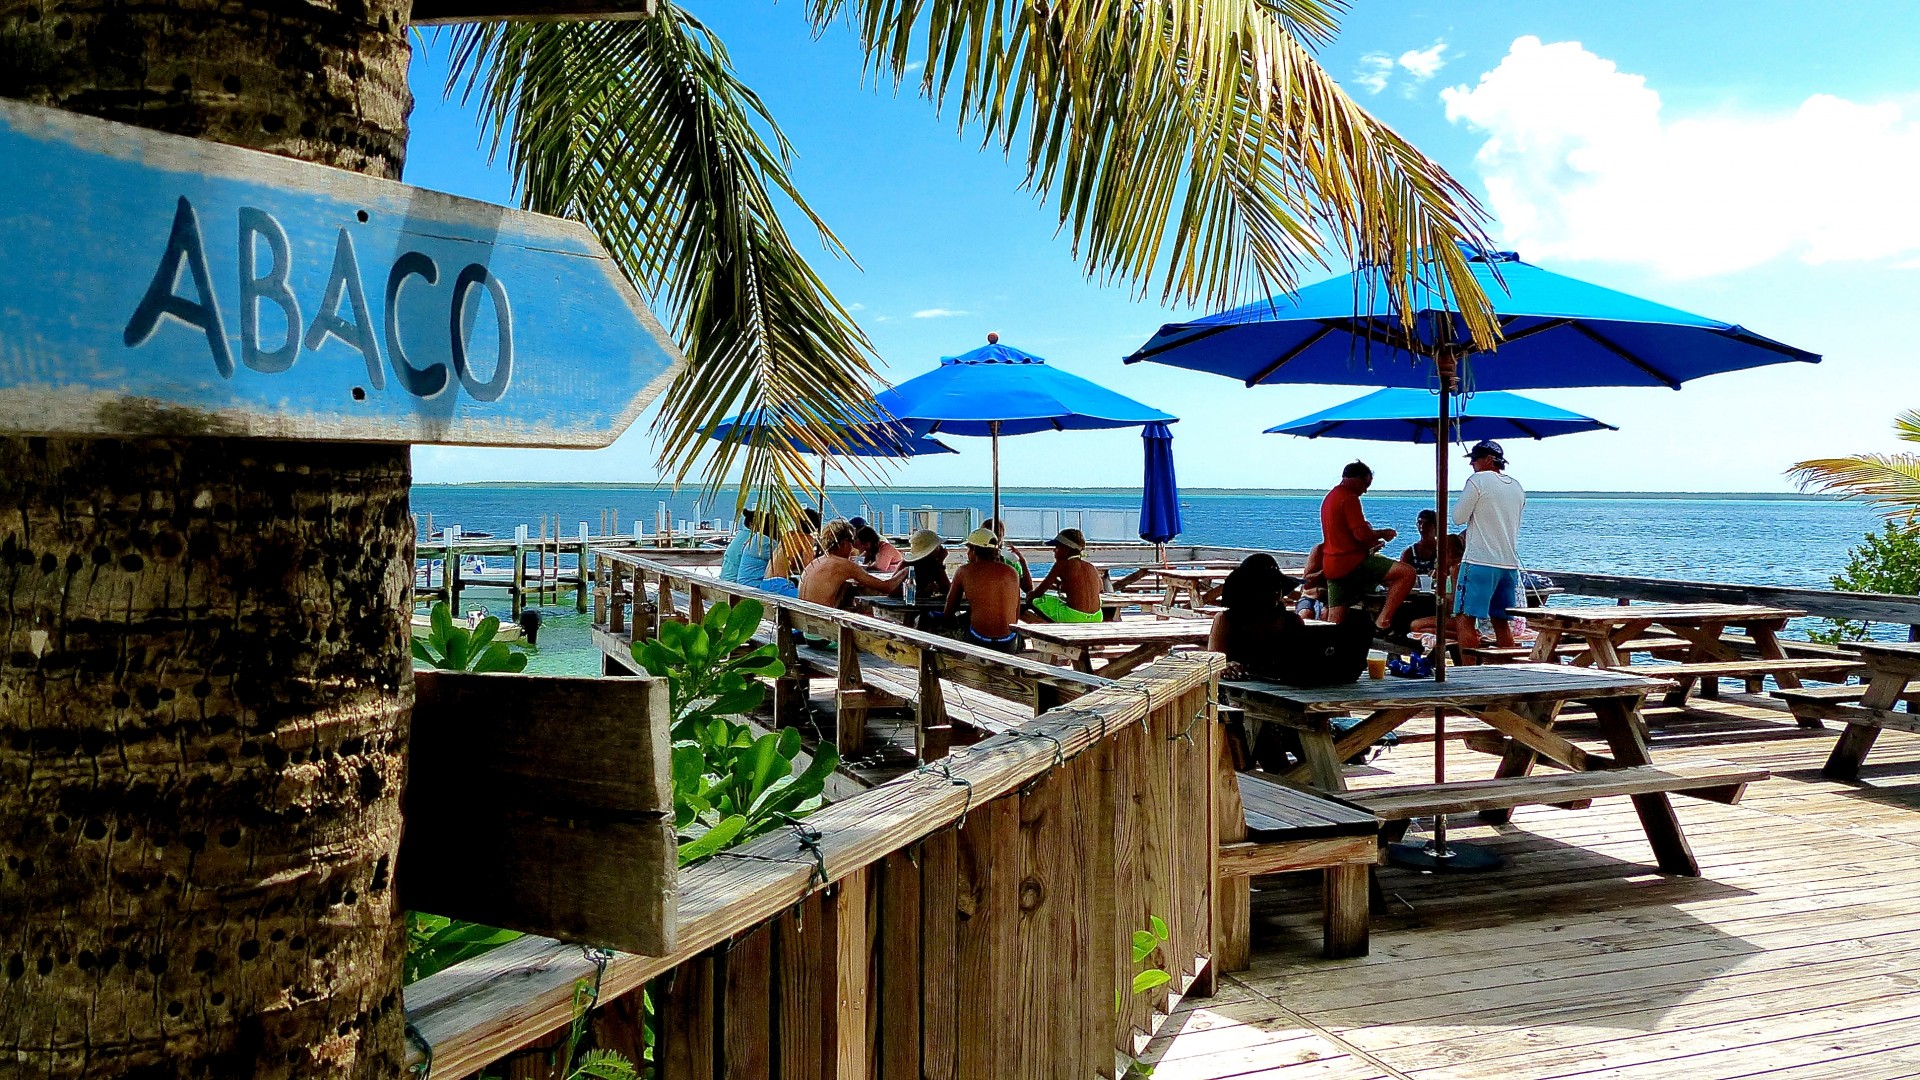 Free photo: Beach bar, Beach, Chairs